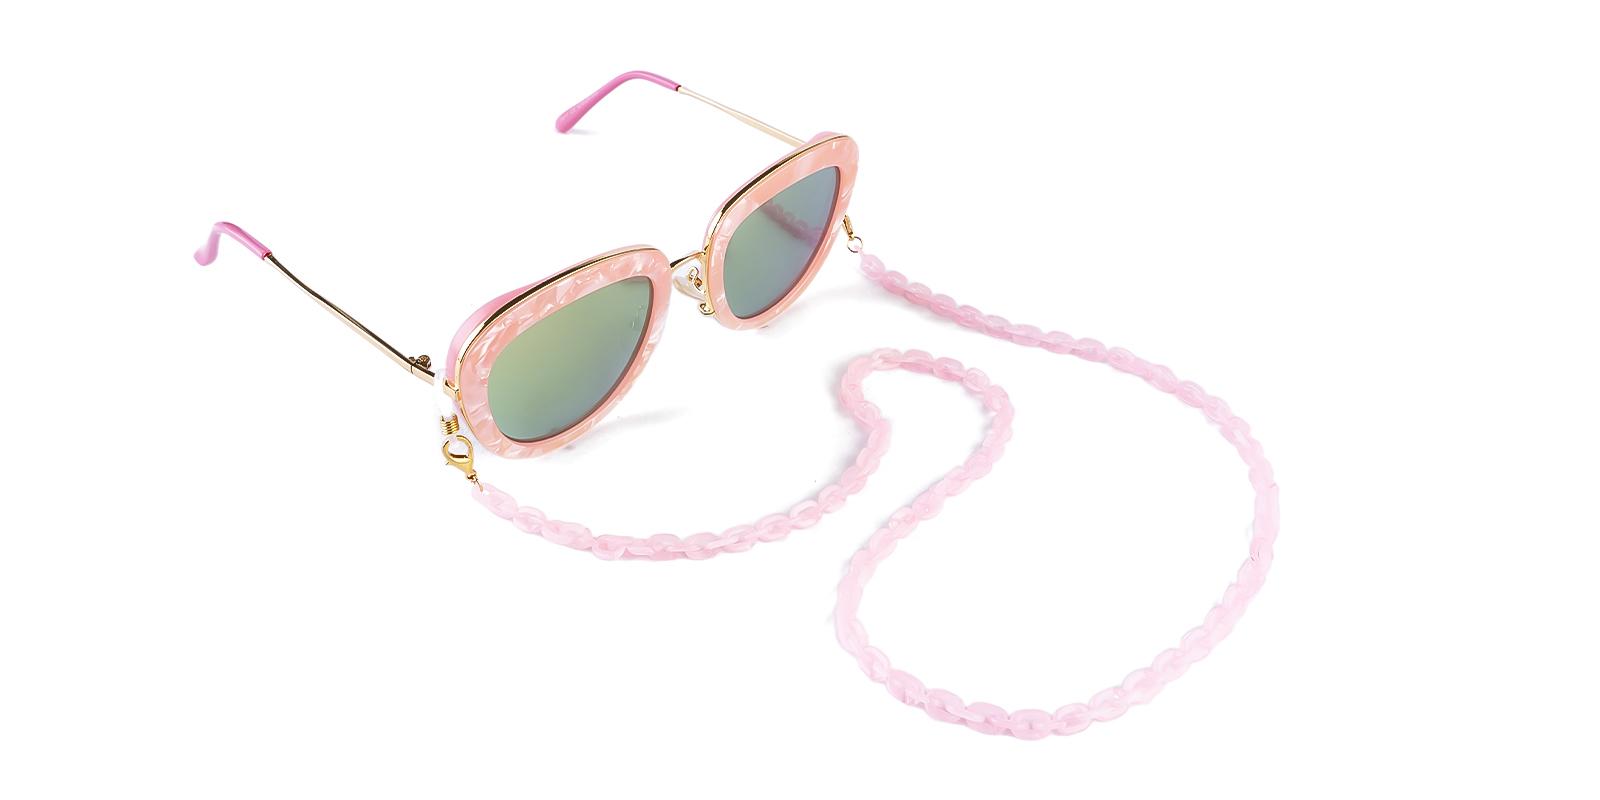 Hepat - Eyeglasses Chain Pink  eyeglasses-chain , glasses-chain Frames from ABBE Glasses